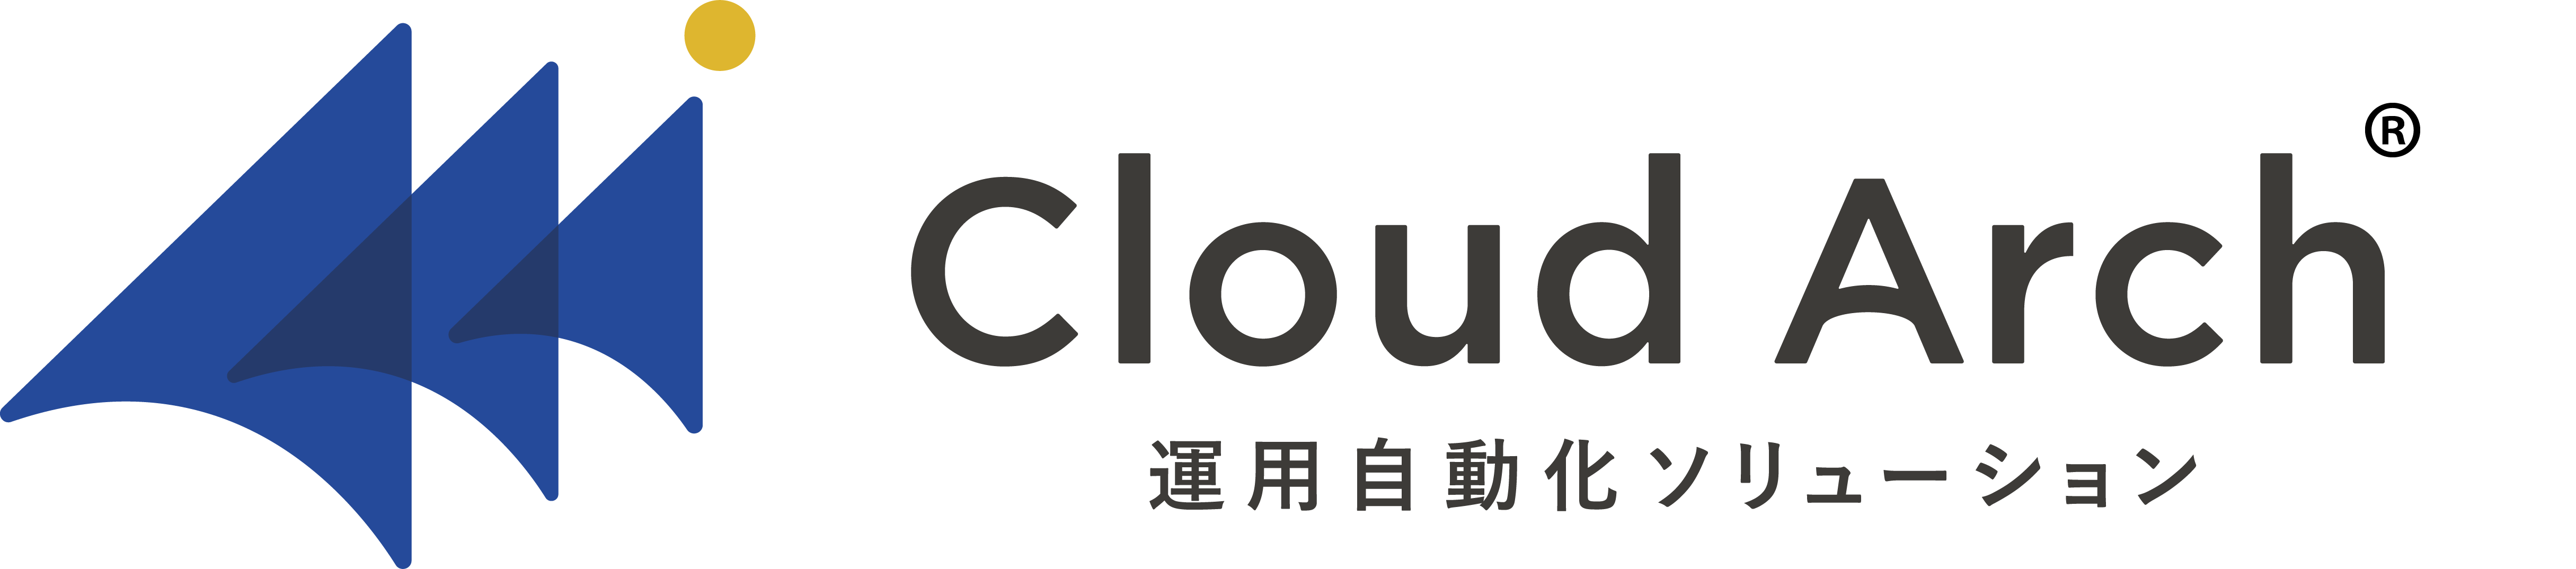 Cloud Arch 運用自動化ソリューション